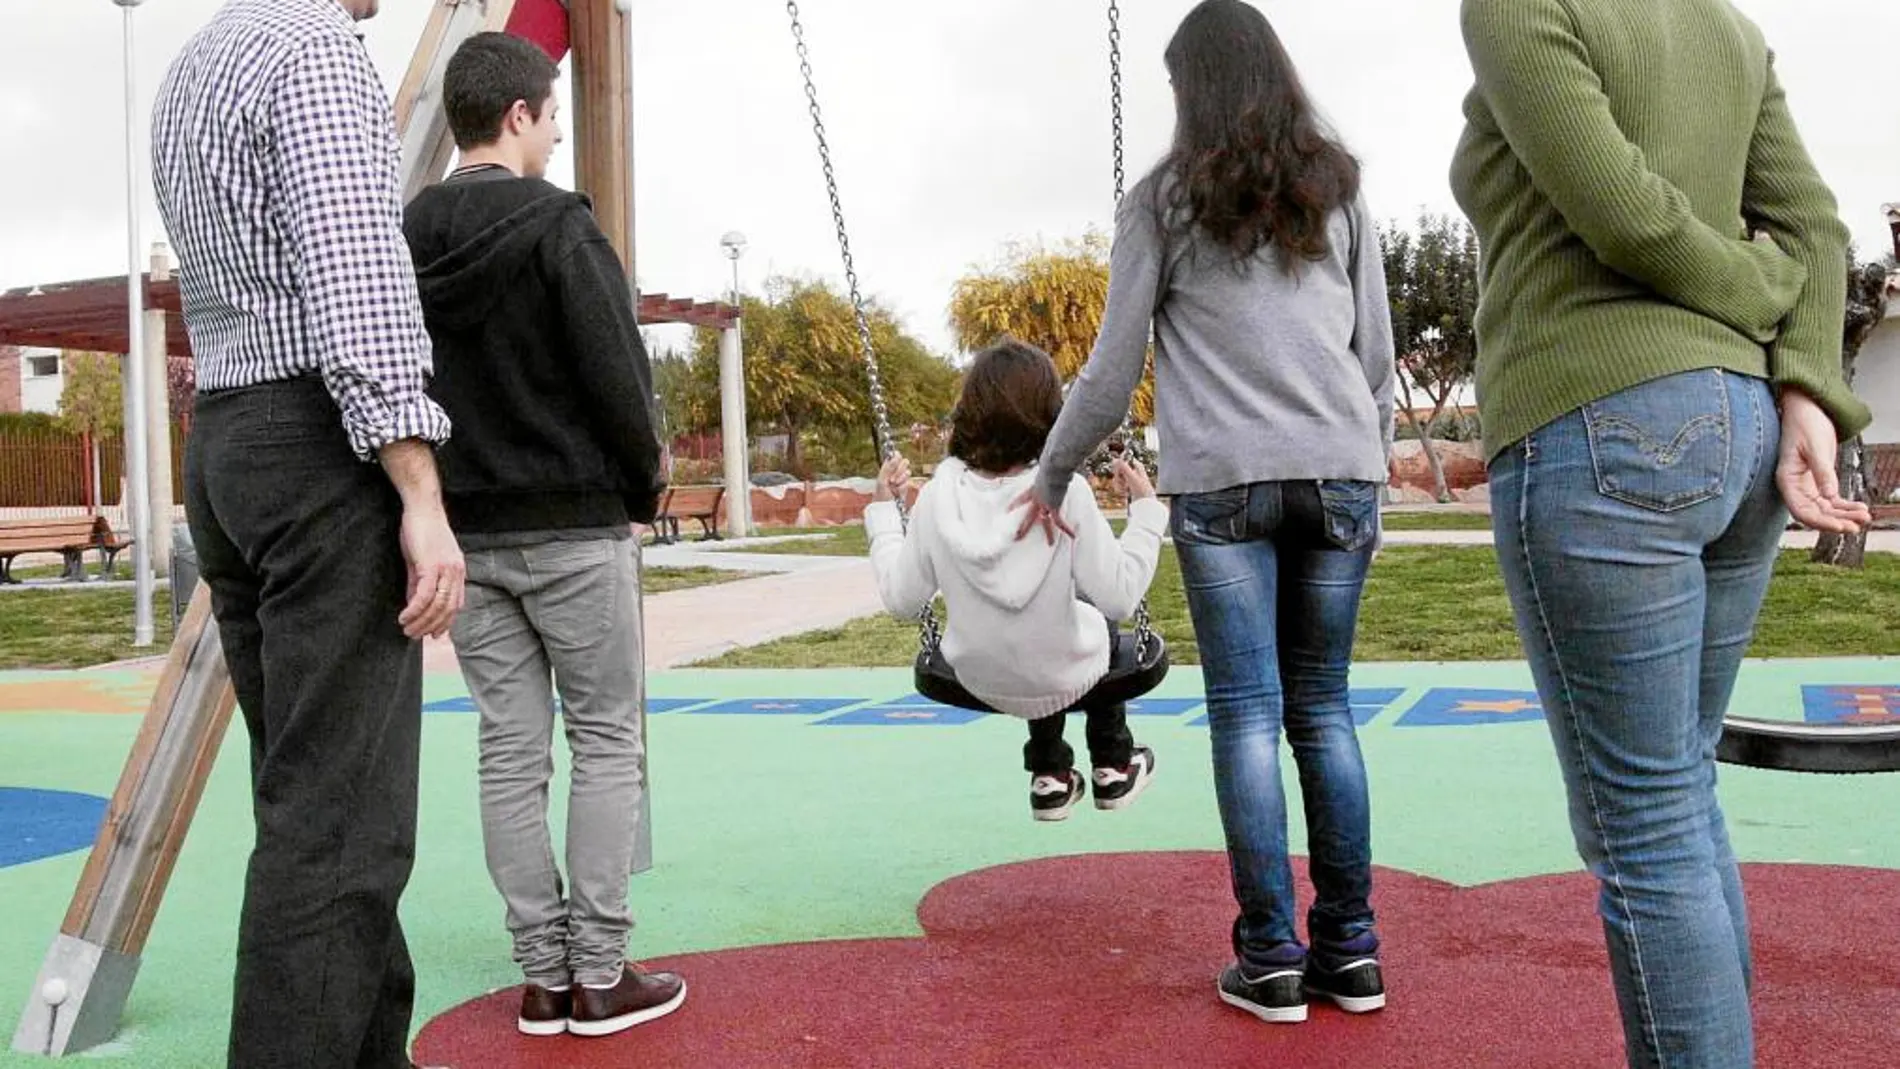 La pequeña de la familia, que reside en el Aljarafe, se divierte con sus padres y hermanos en un parque